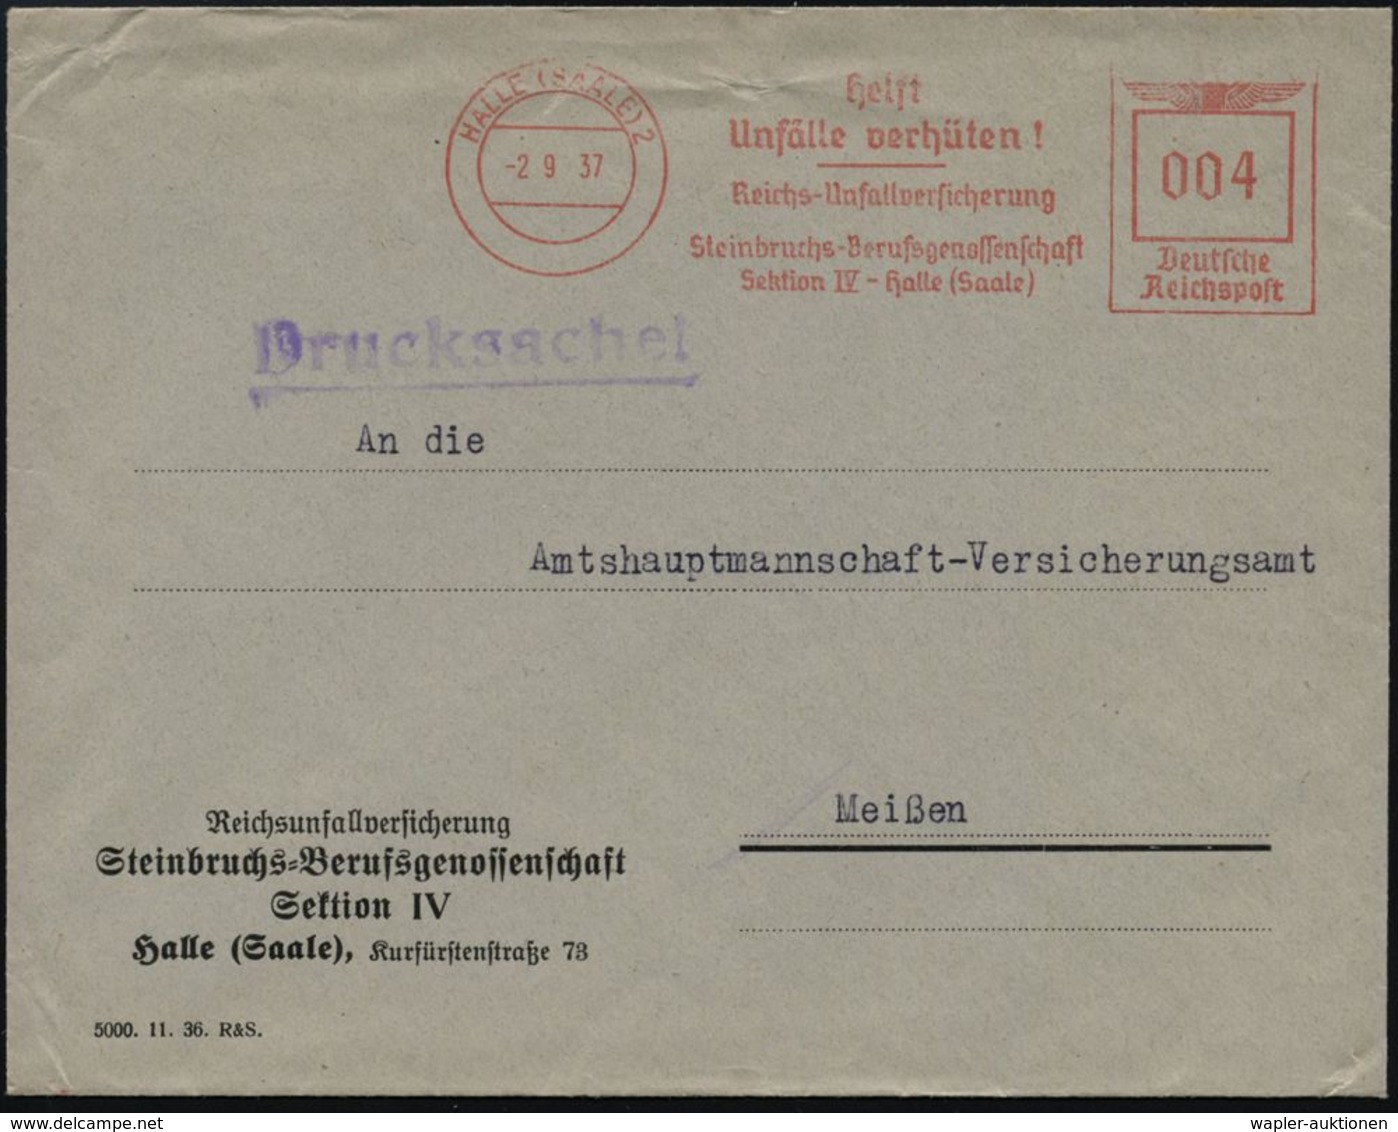 GEOLOGIE / MINERALIEN / ERZE : HALLE (SAALE) 2/ Helft/ Unfälle Verhüten!/ ..Steinbruchs-Berufsgenossenschaft.. 1937 (2.9 - Other & Unclassified